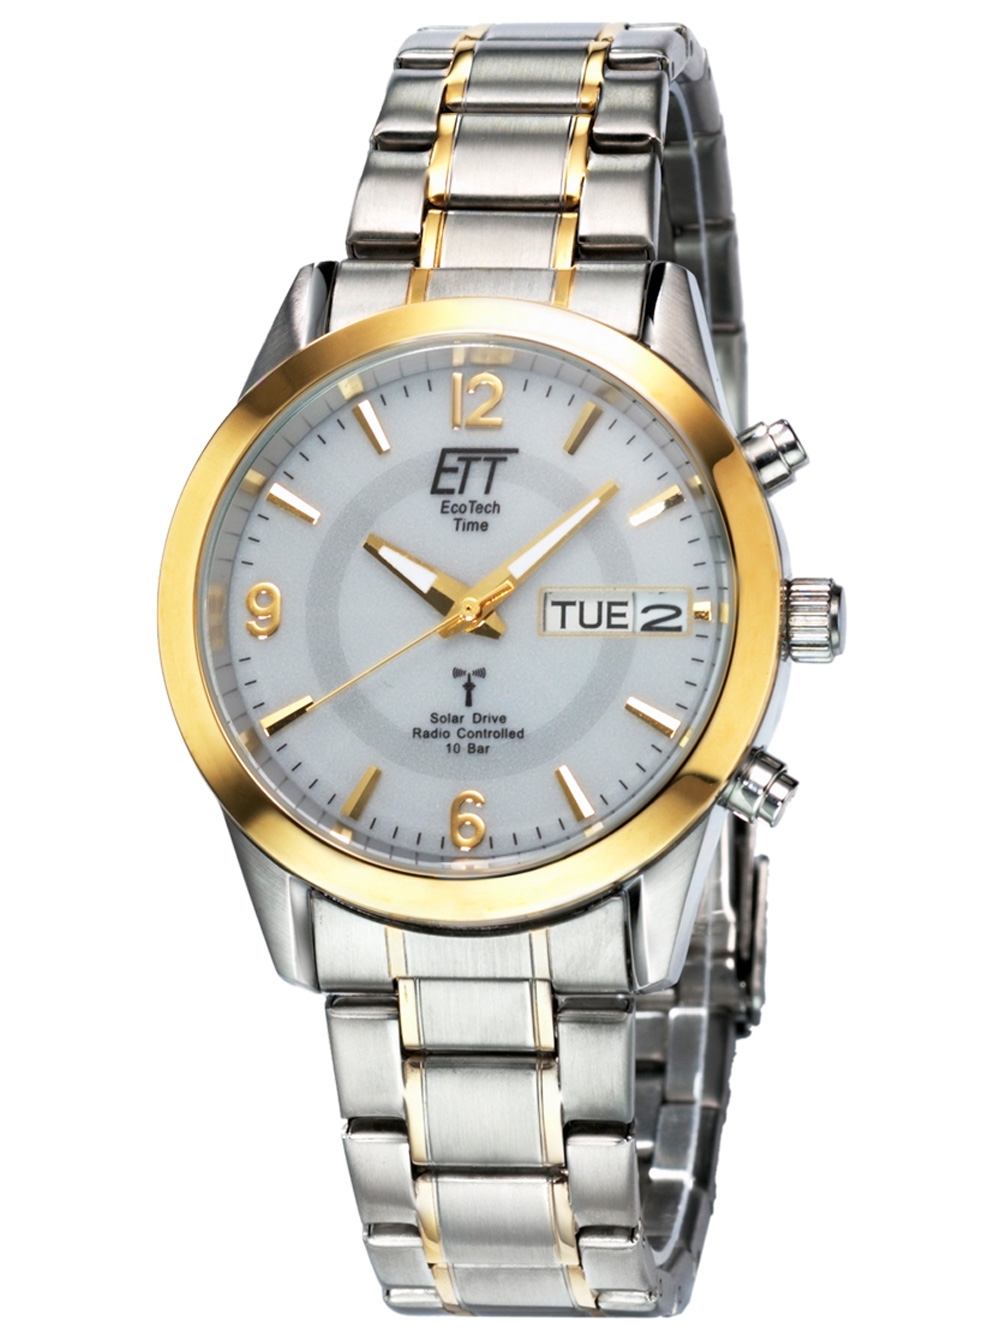 выбор, по Time золотистые доставка Eco | в Купить Наручные цены, - Украине часы наручные + серебристые Tech широкий Rozetka™ доступные часы онлайн